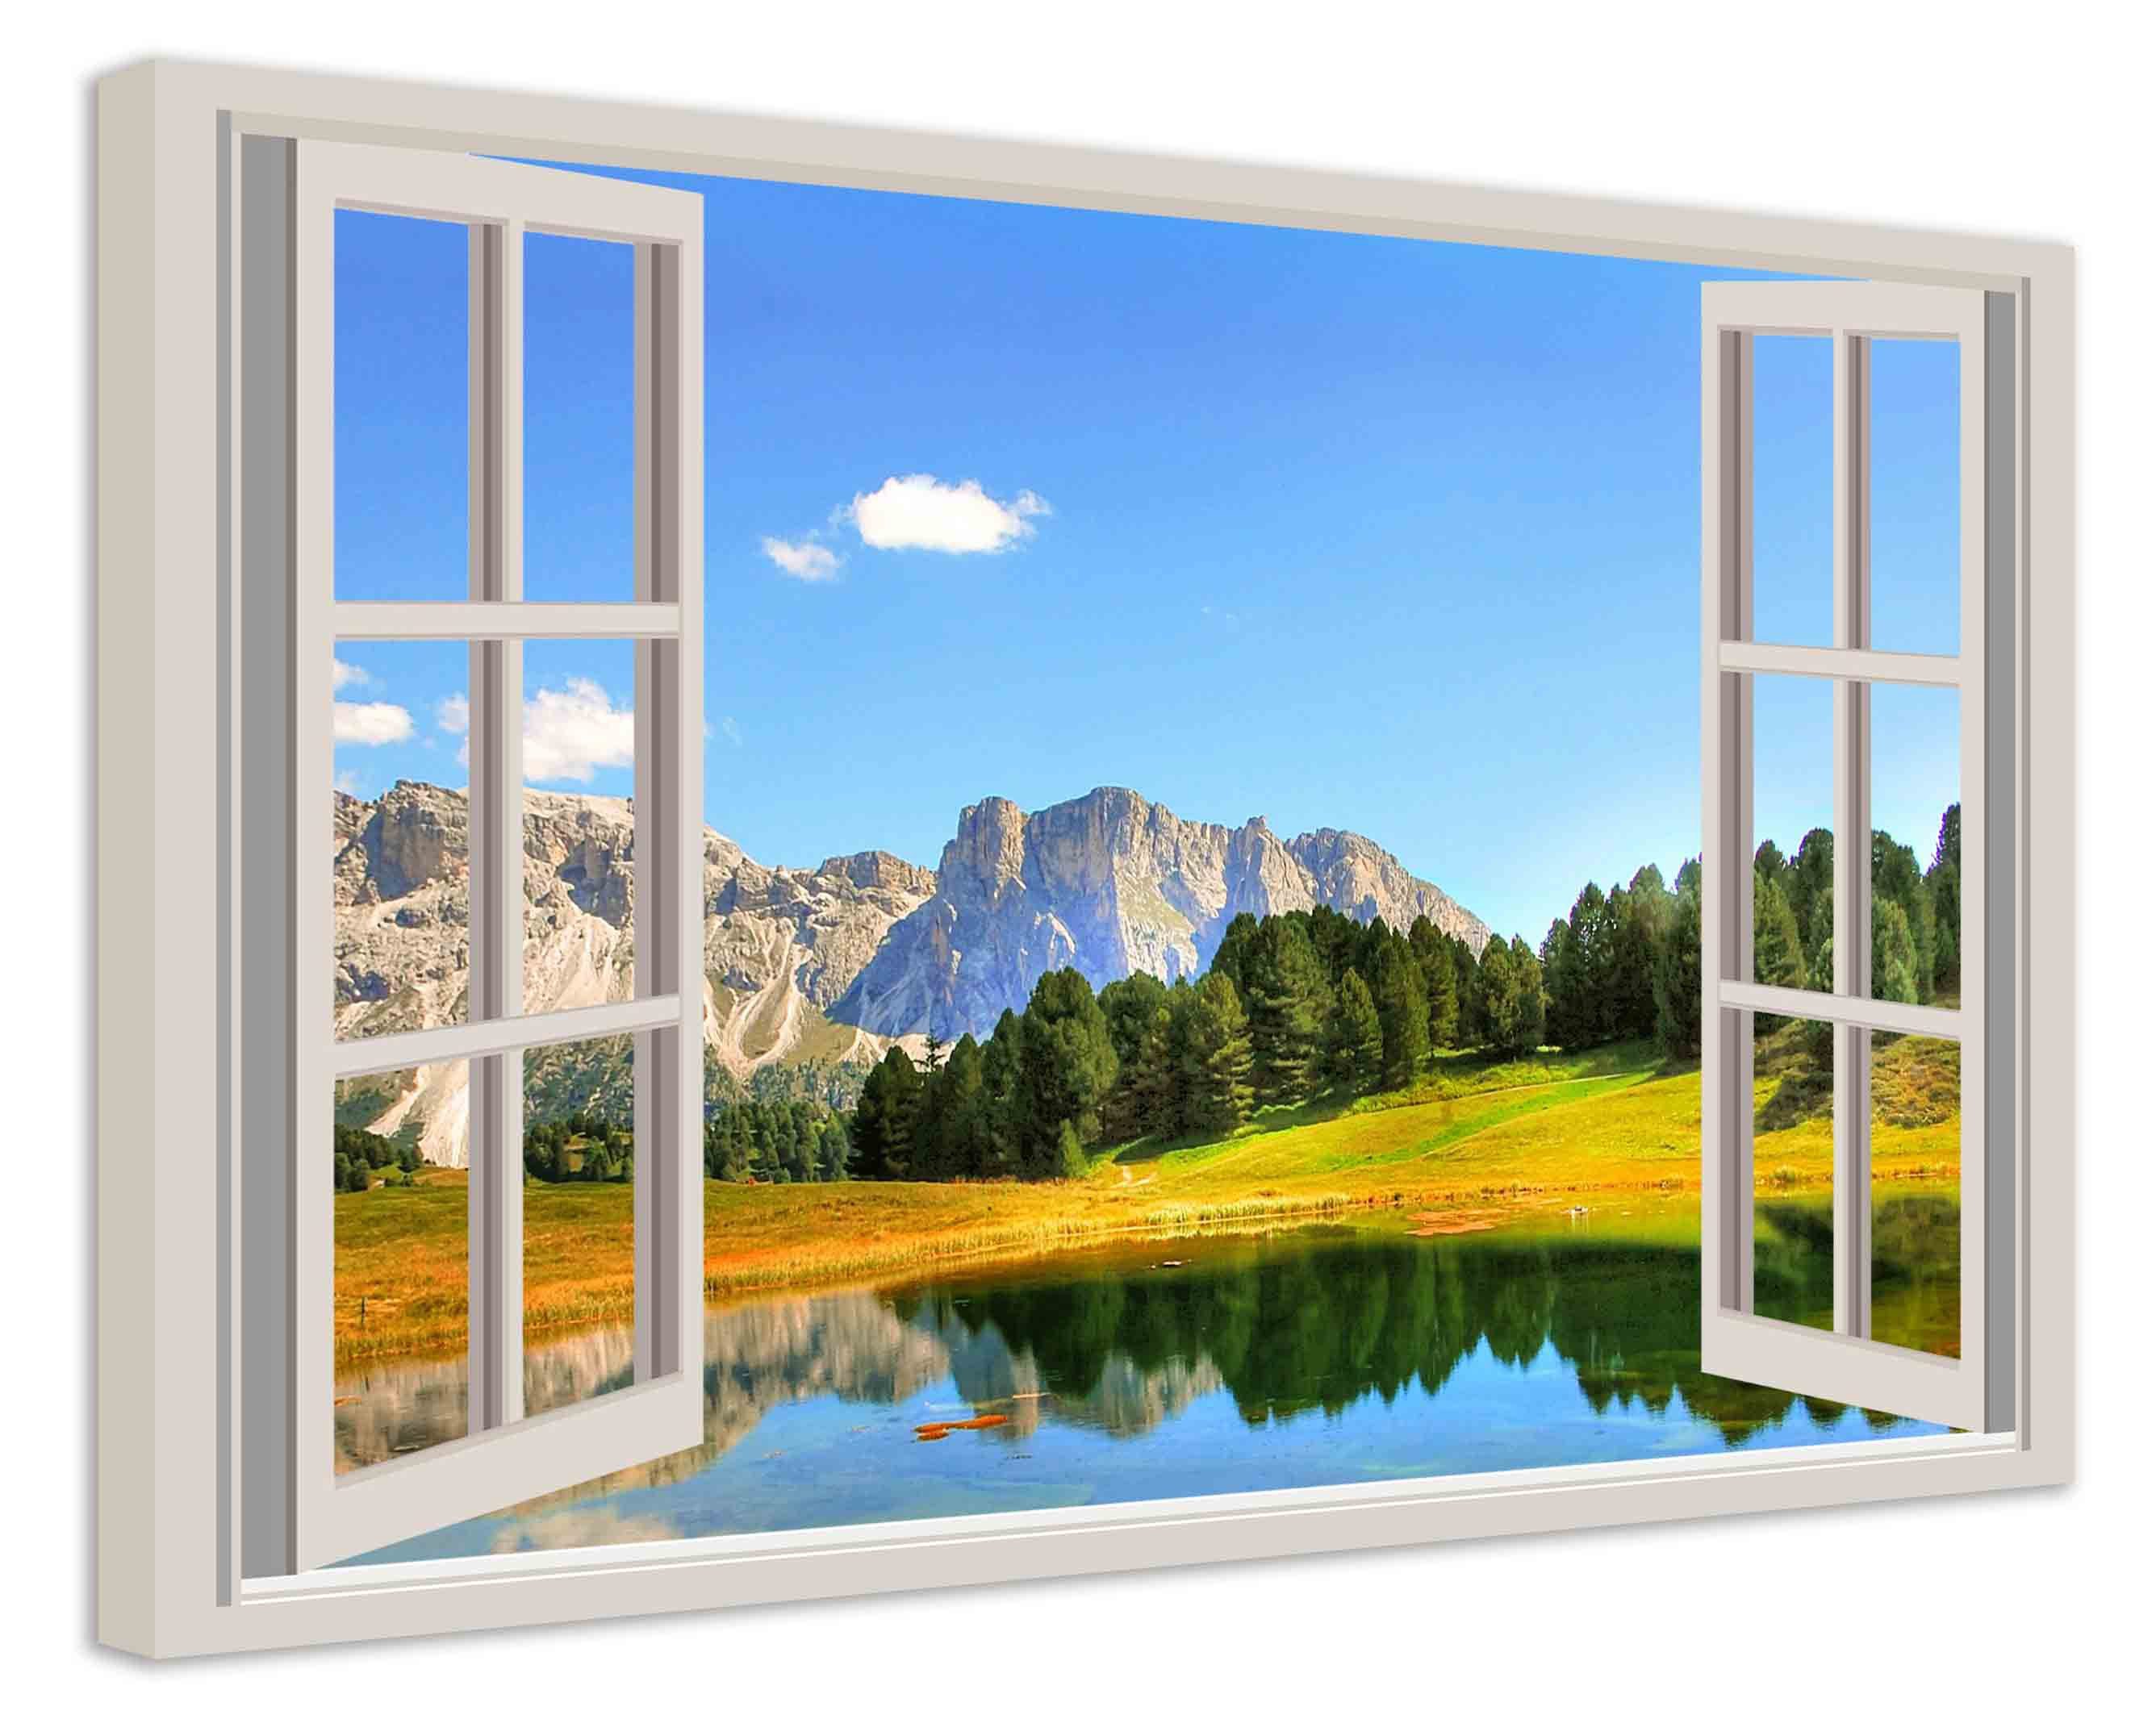 Leinwando Leinwandbild Gemälde / Fensterblick auf Weide mit See und Gebirge  - Moderne Kunst / Wanddekoration fertig zum aufhängen